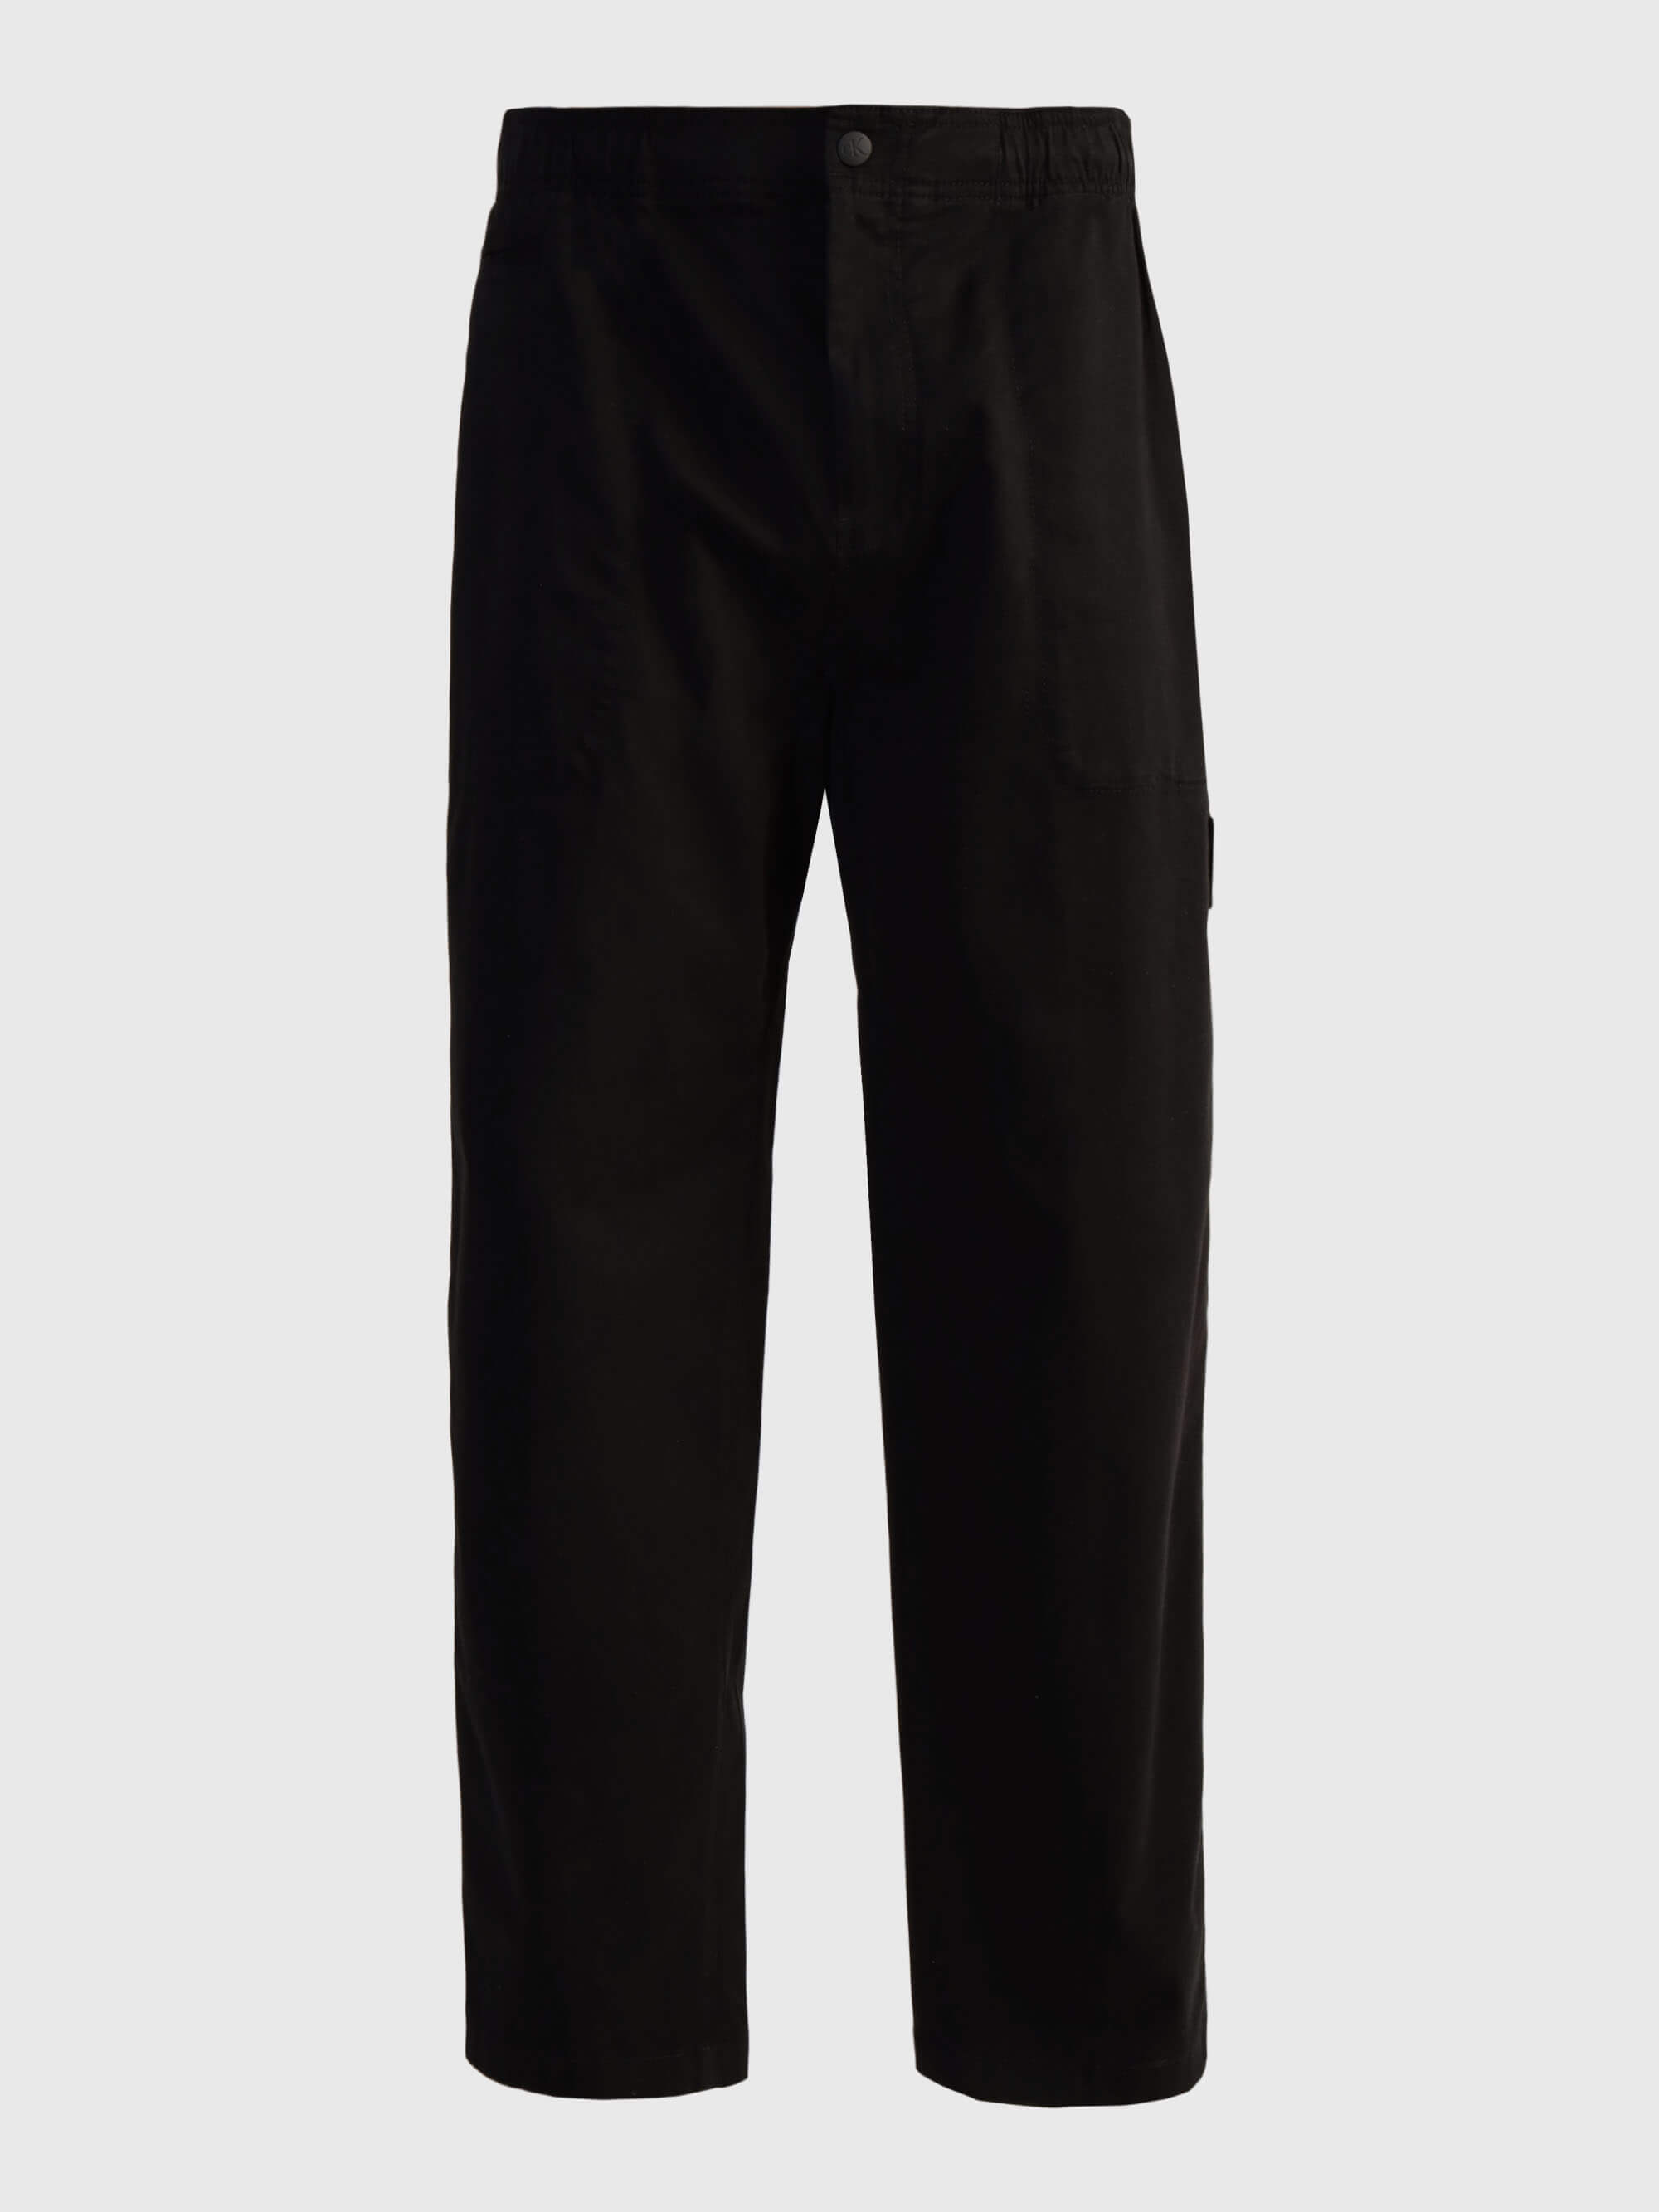 Pantalón Calvin Klein con Monograma Hombre Negro